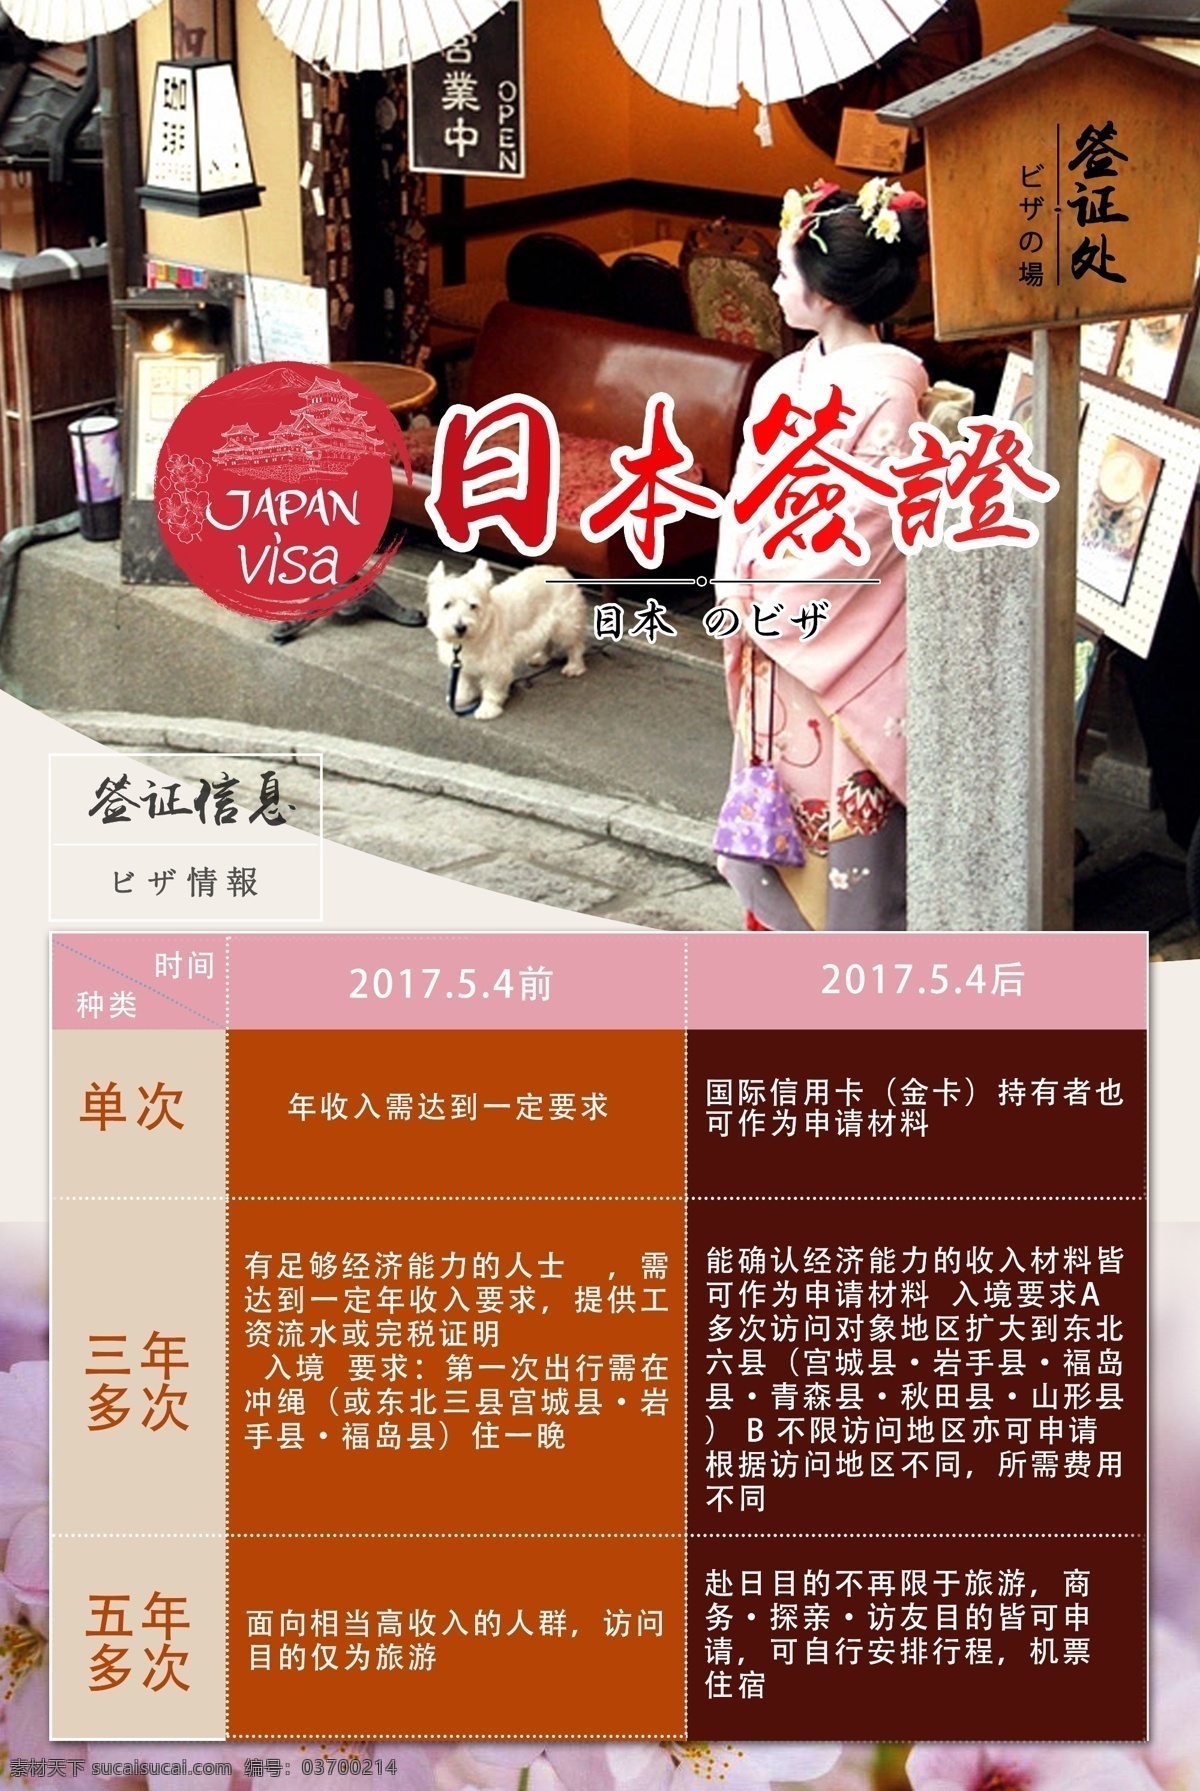 日本 签证 旅游 单次 多次 日本女人 和服 美女 狗狗 日本素材 海报